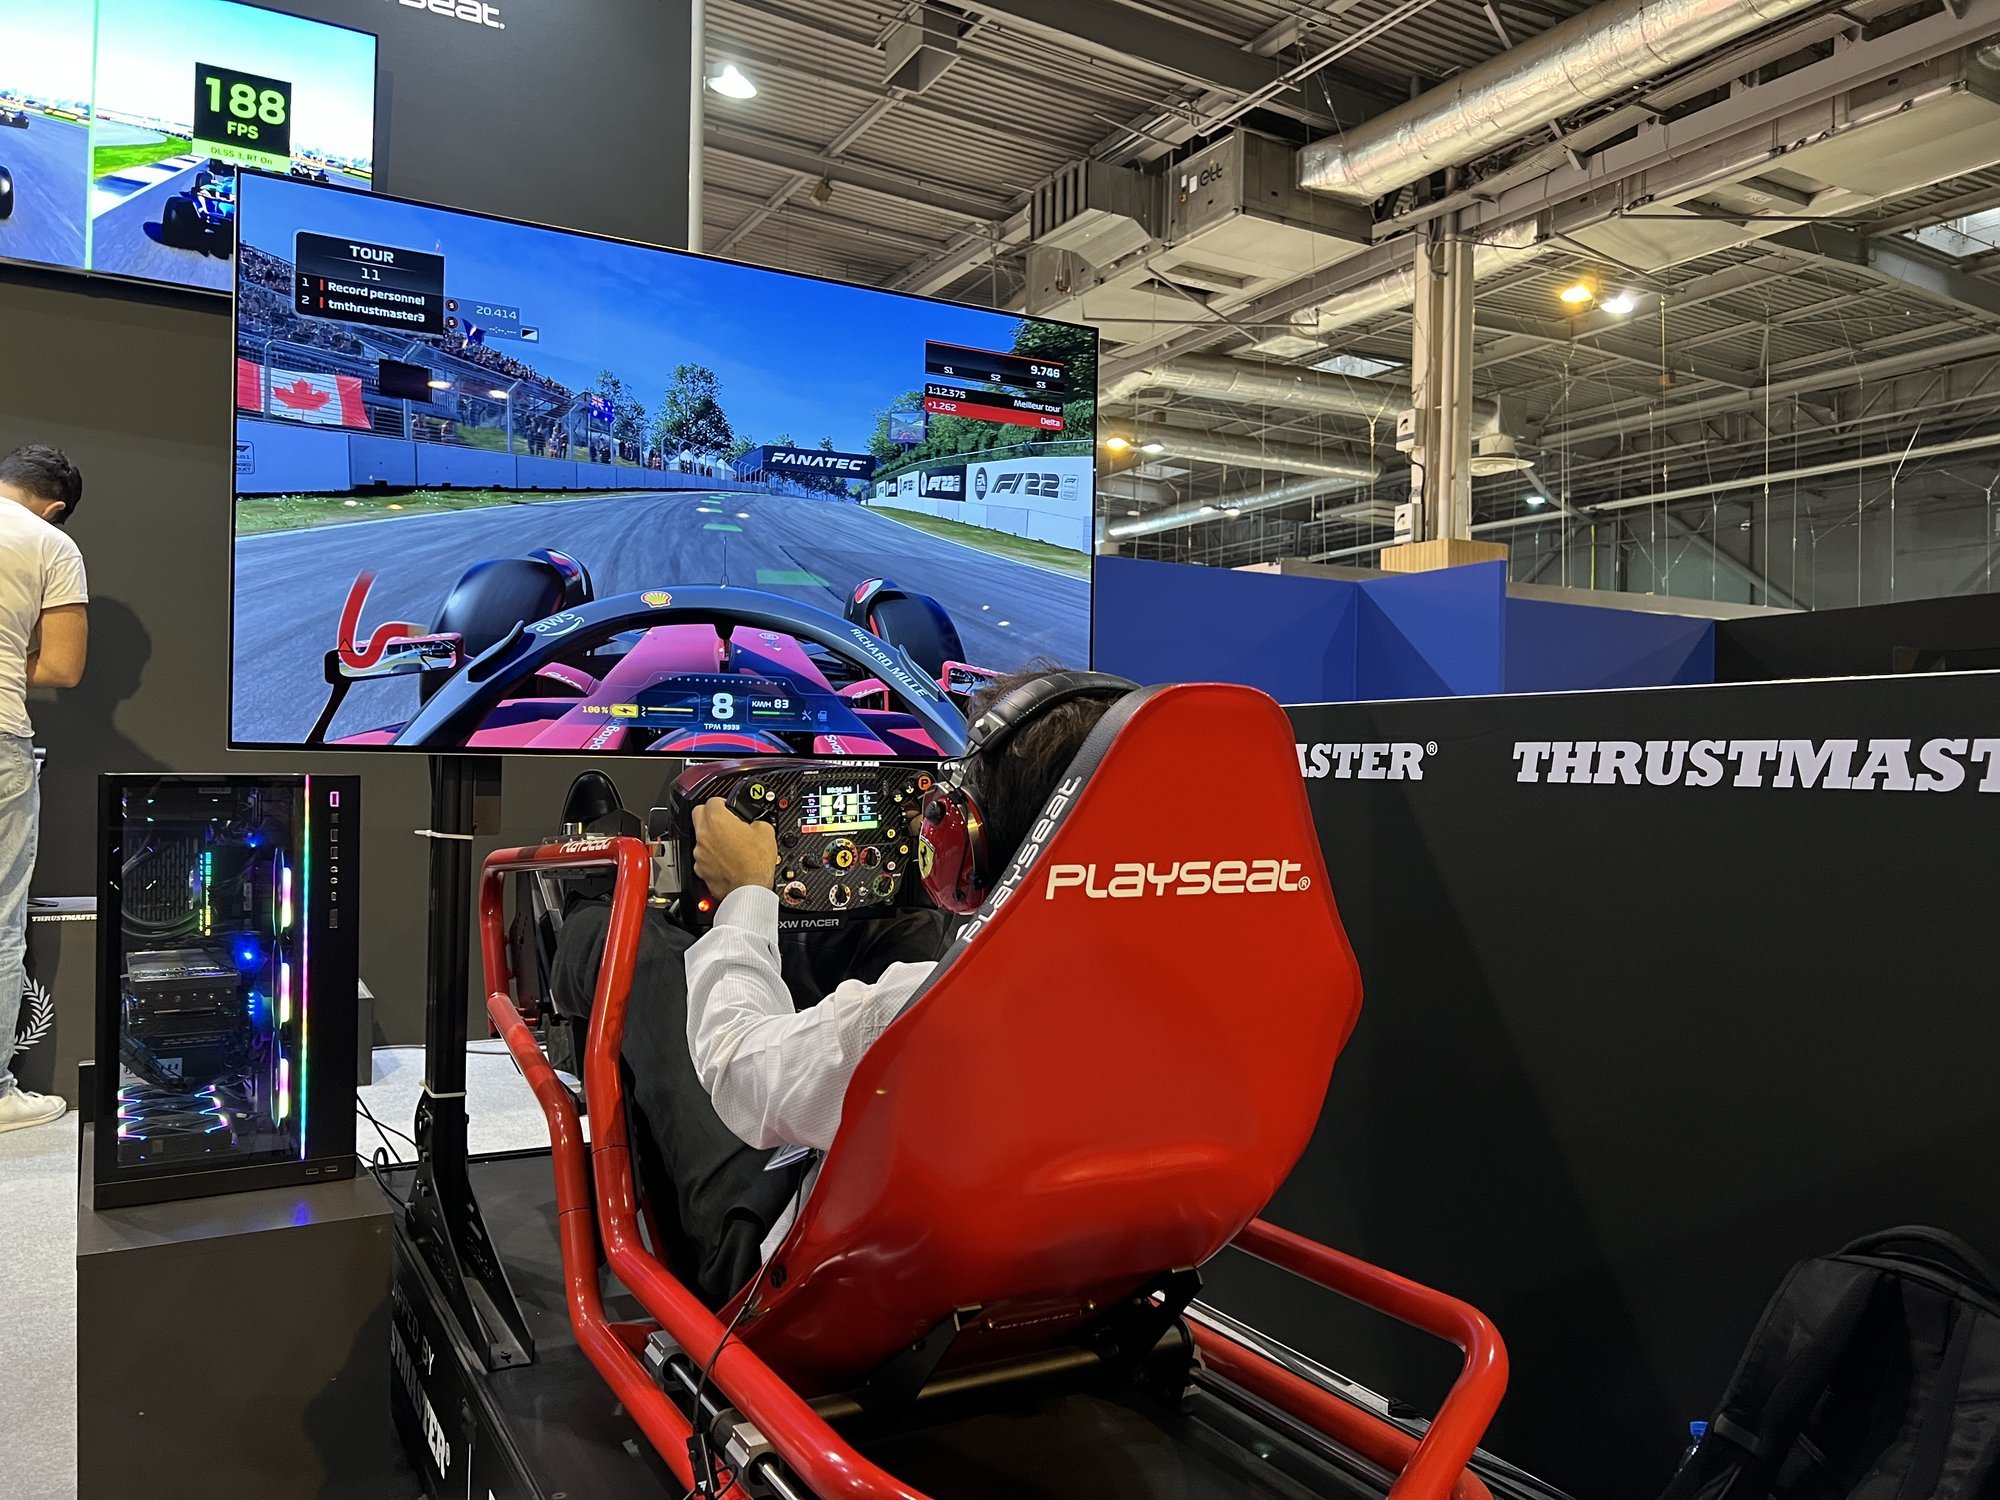 Simulation : une Formule 1 dans le salon - Motorlegend